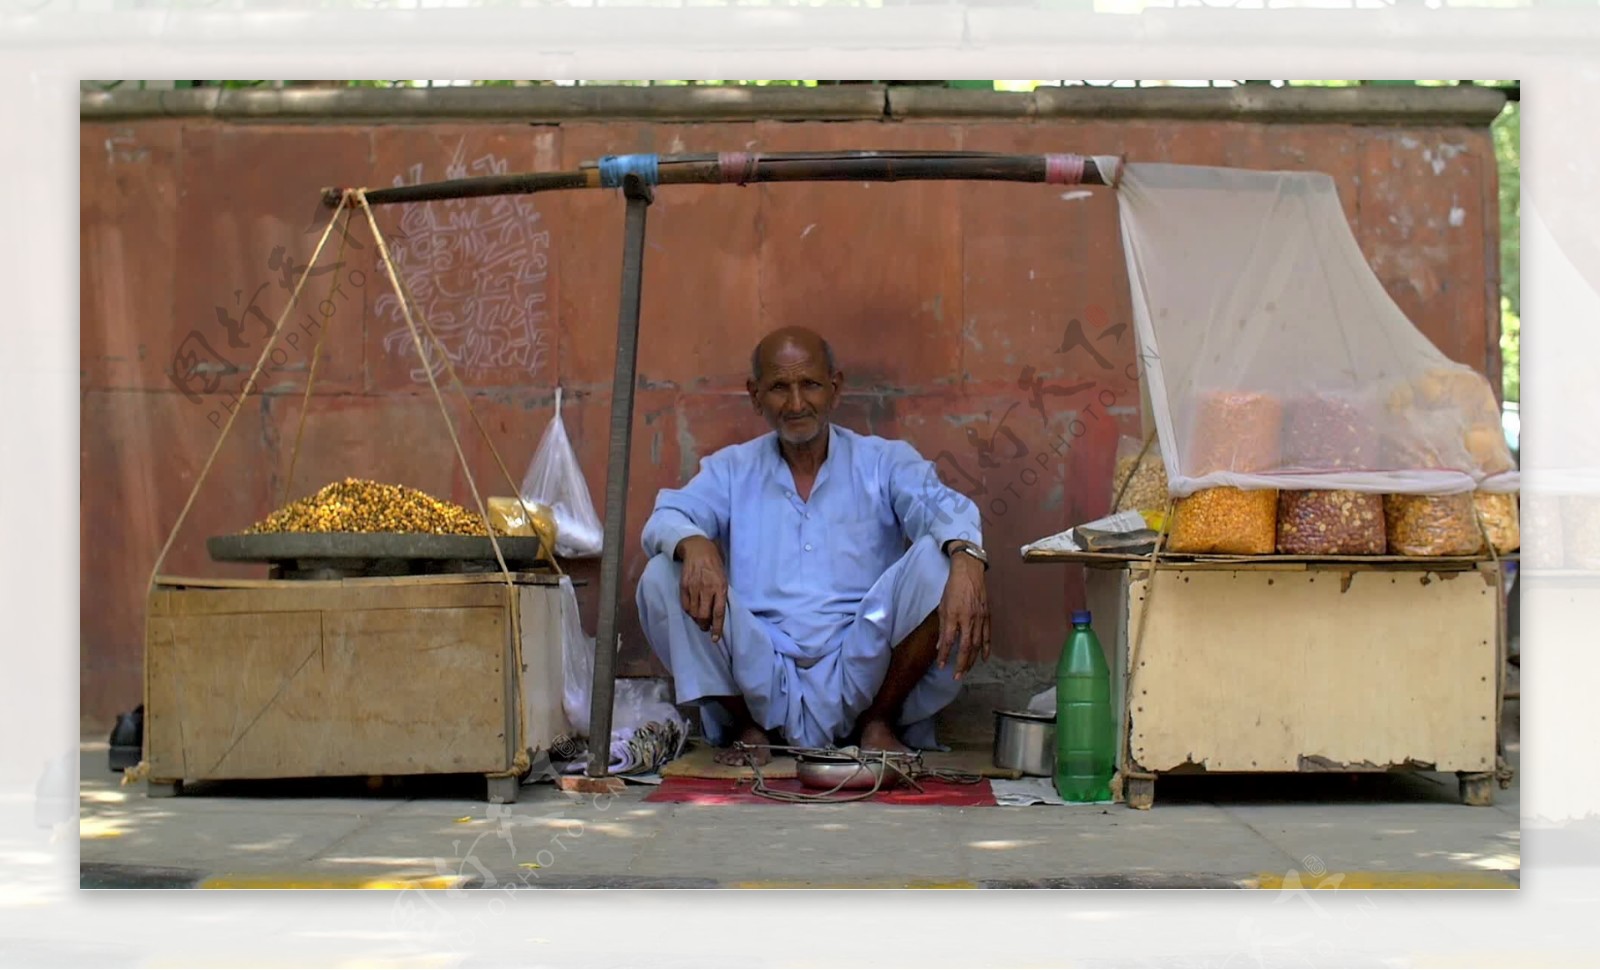 坐在印度街的食品摊上的老人